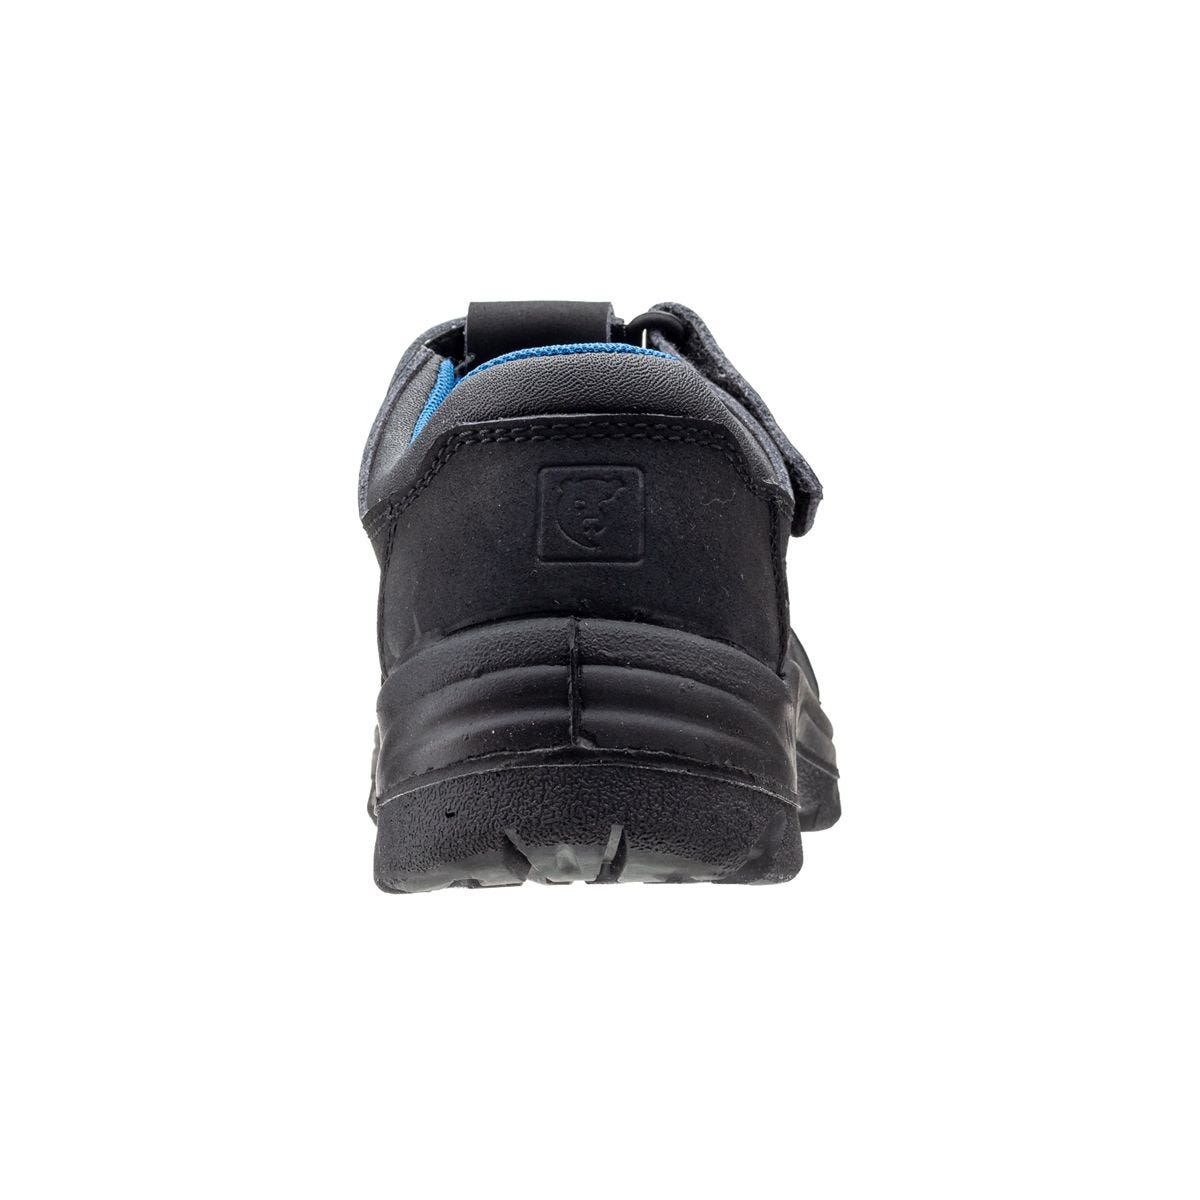 Sandales de travail basses Boni II Noir - Coverguard - Taille 38 2